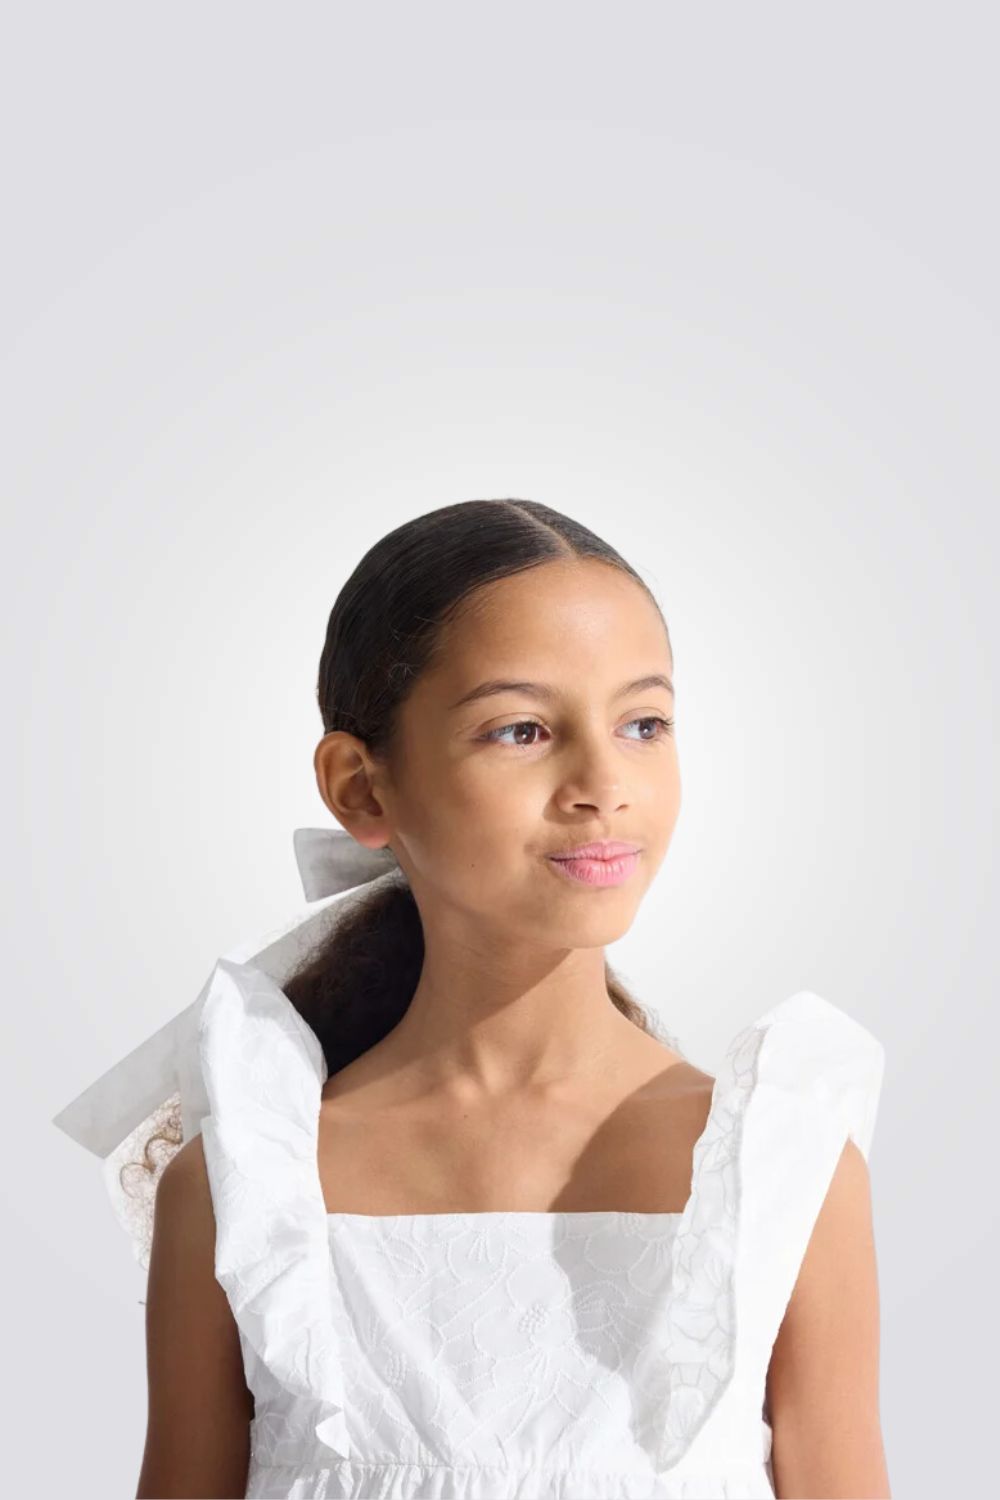 חולצה לילדות עם עיטורי רקמה בצבע לבן